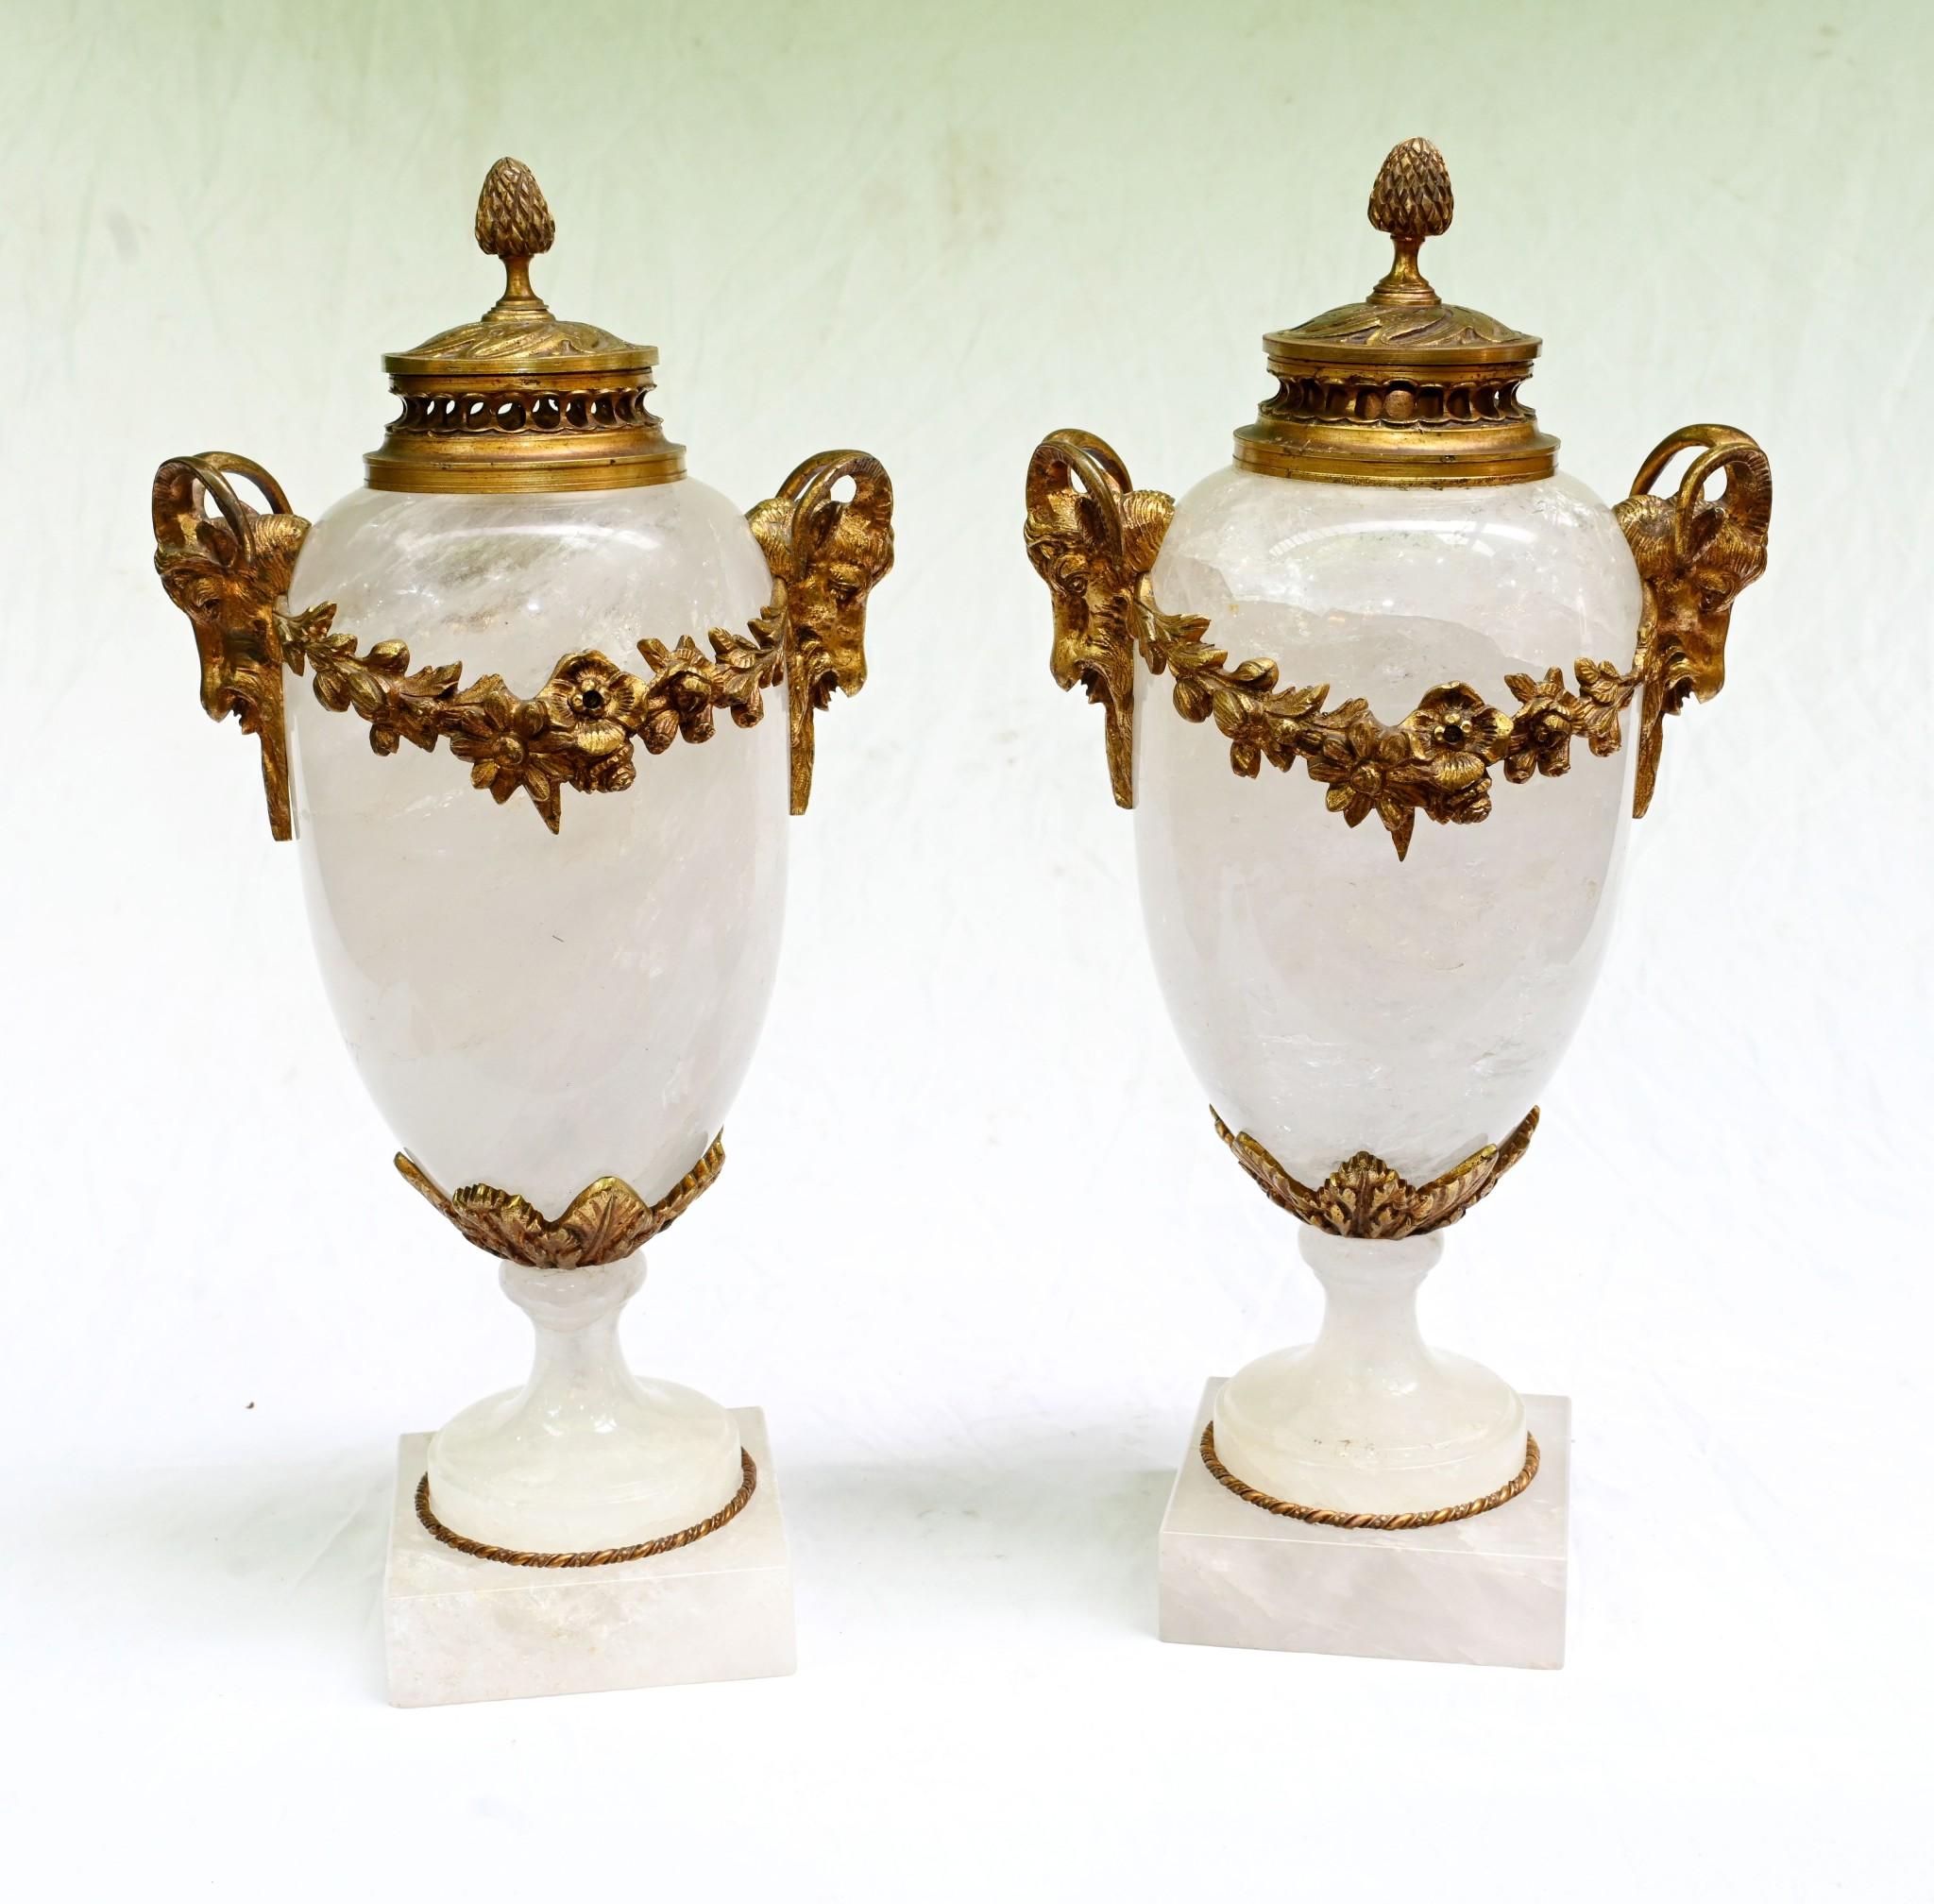 Magnifique paire d'urnes Cassolette françaises en cristal de roche de la plus haute qualité
De forme Amphora, elles se distinguent particulièrement par le jeu de couleurs entre le cristal de roche et la dorure.
Les accessoires dorés comprennent des